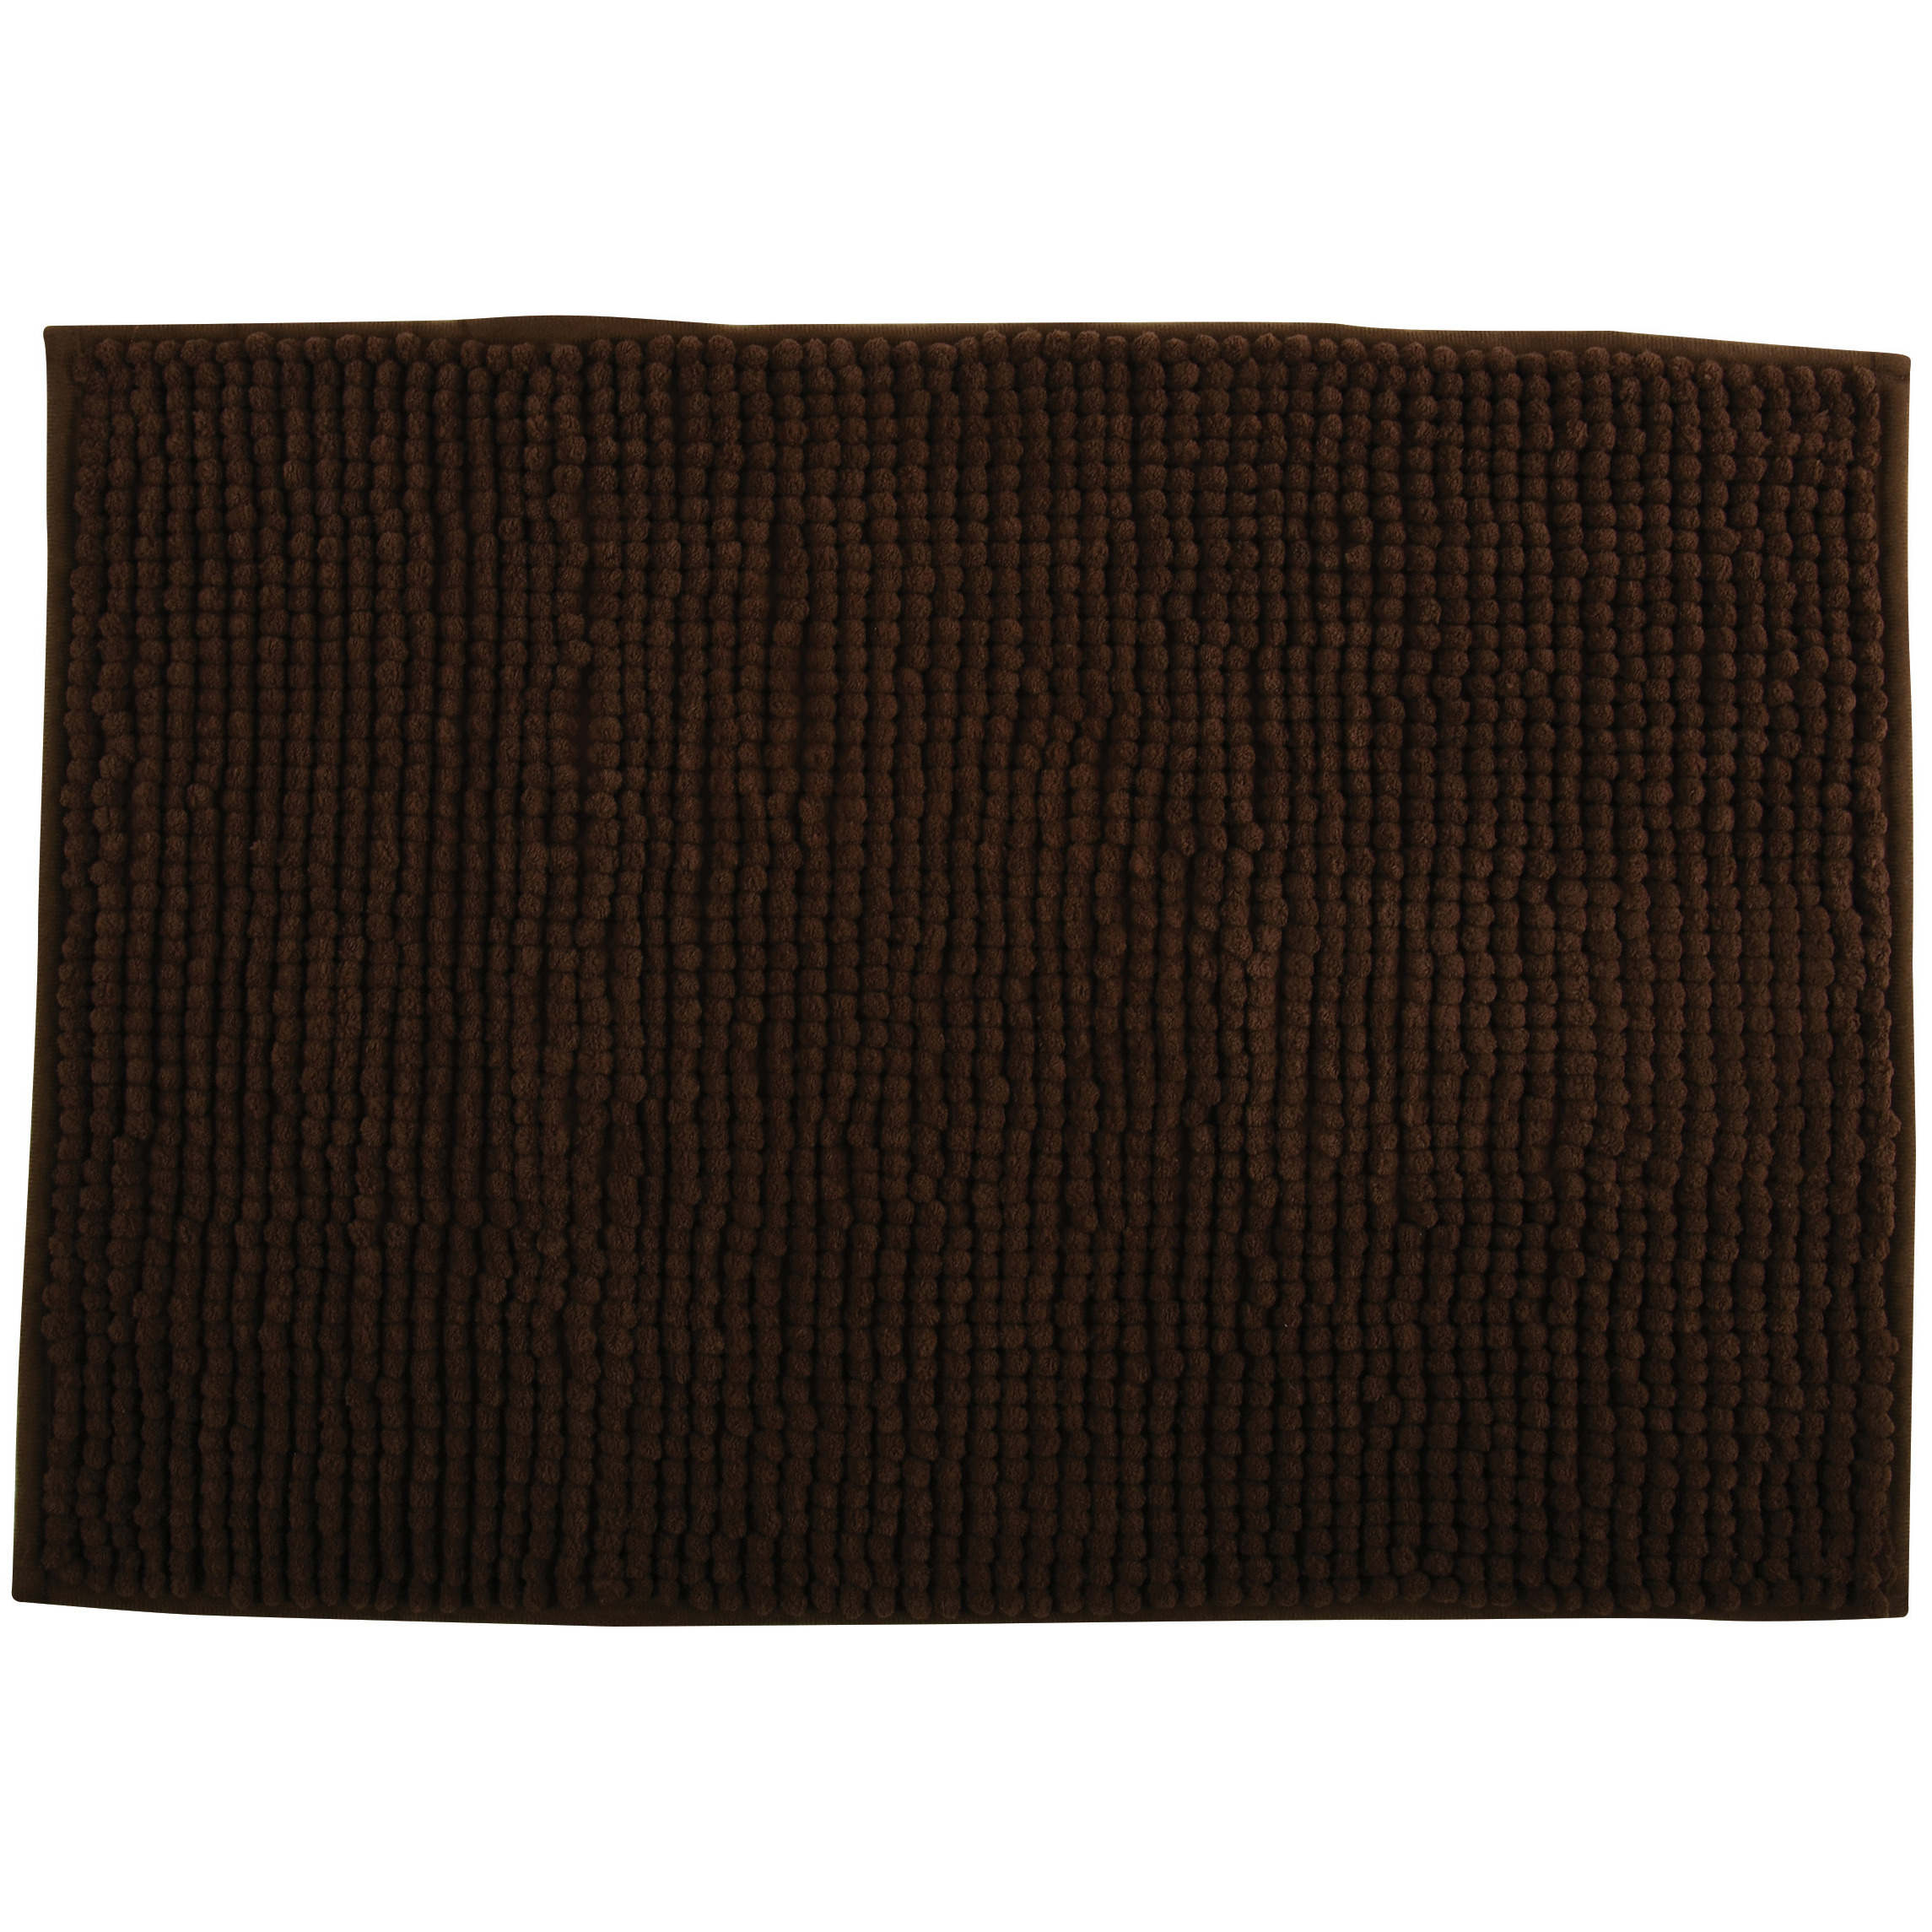 Badkamerkleedje-badmat tapijt voor op de vloer bruin 40 x 60 cm